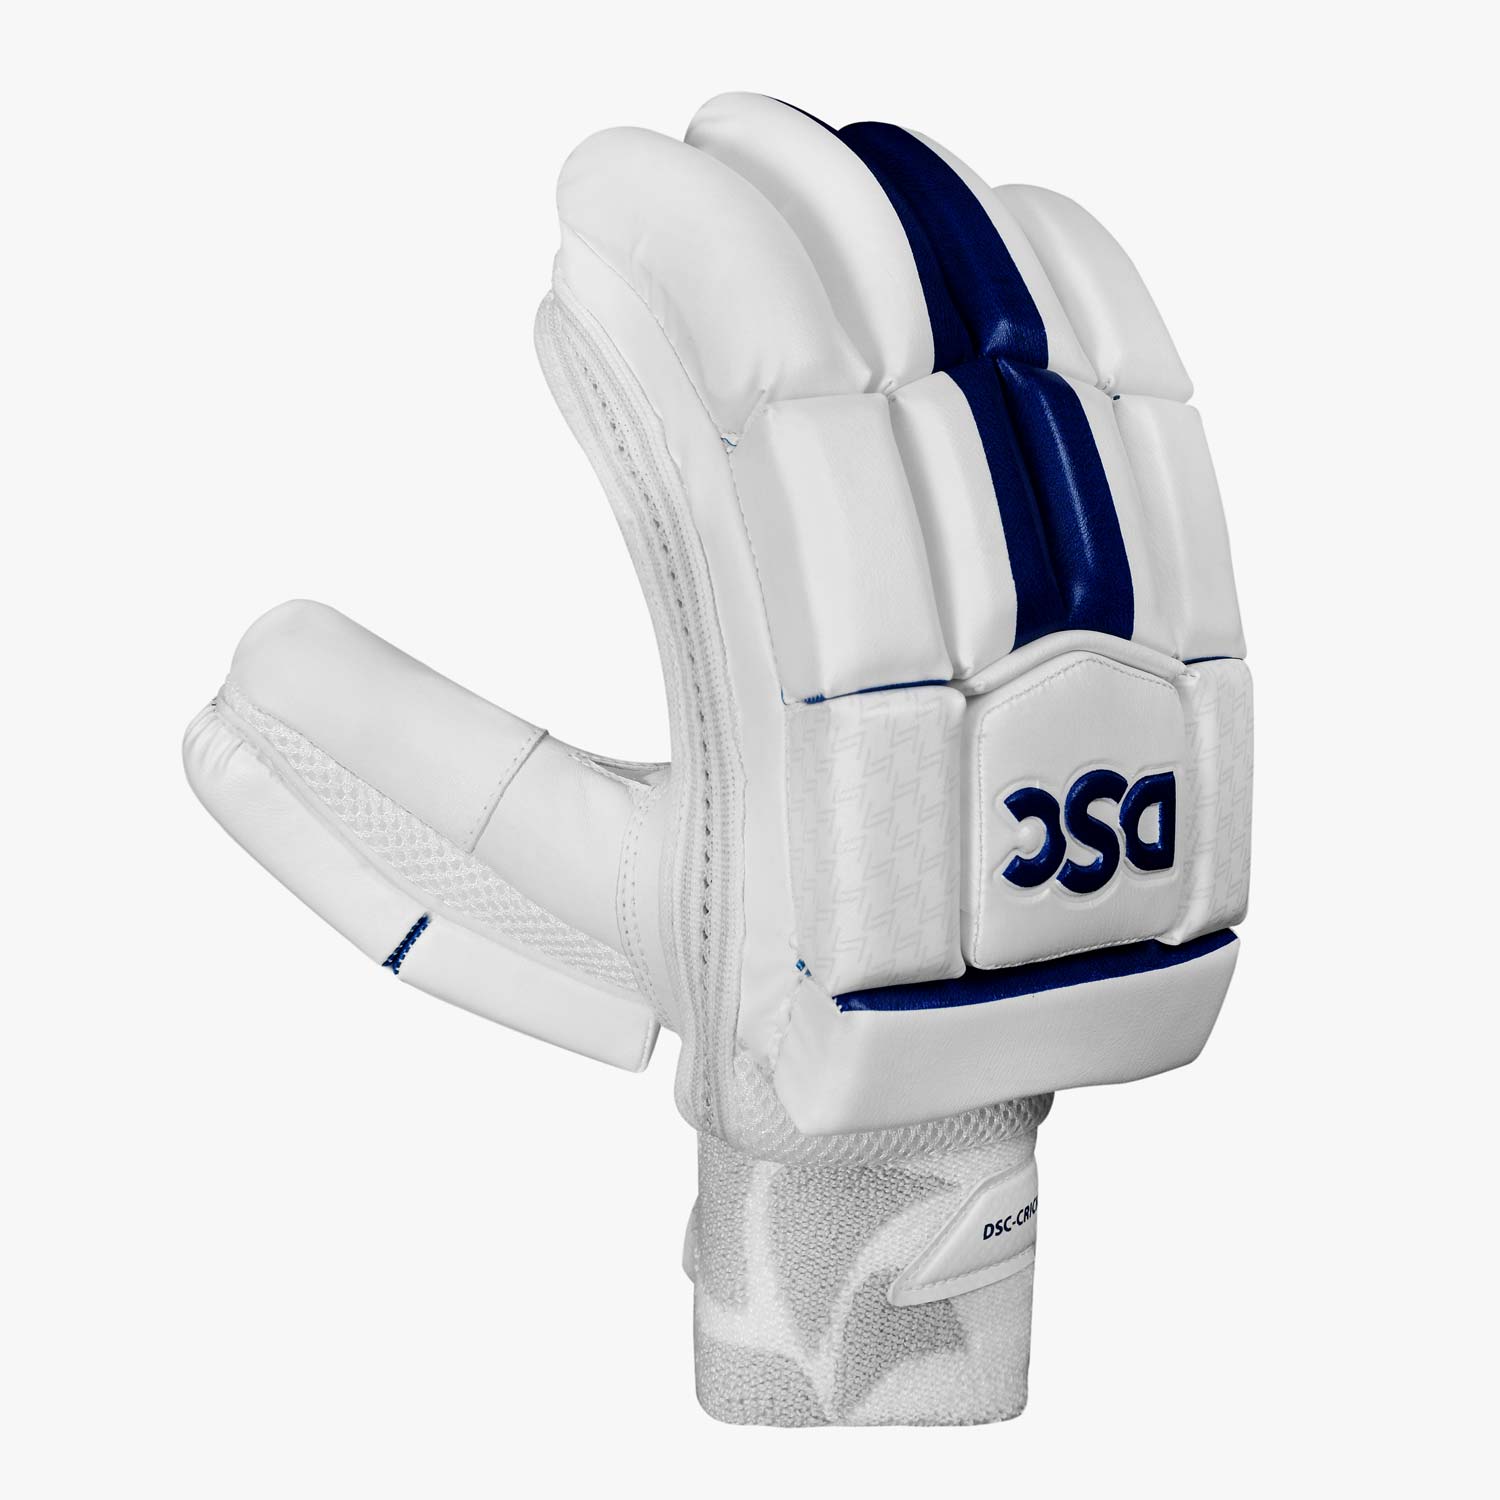 DSC-Pearla-4000-Batting-Gloves